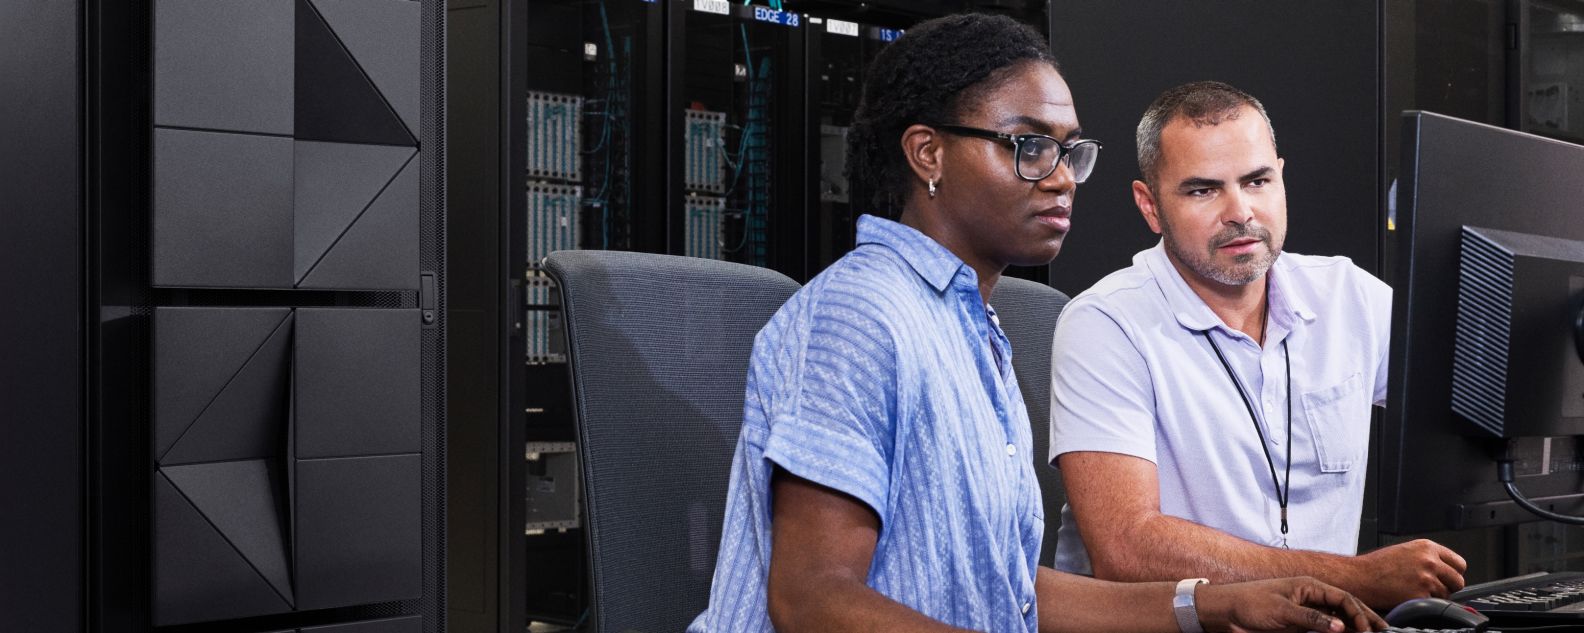 Dos ingenieros que trabajan en computadoras en la sala de servidores